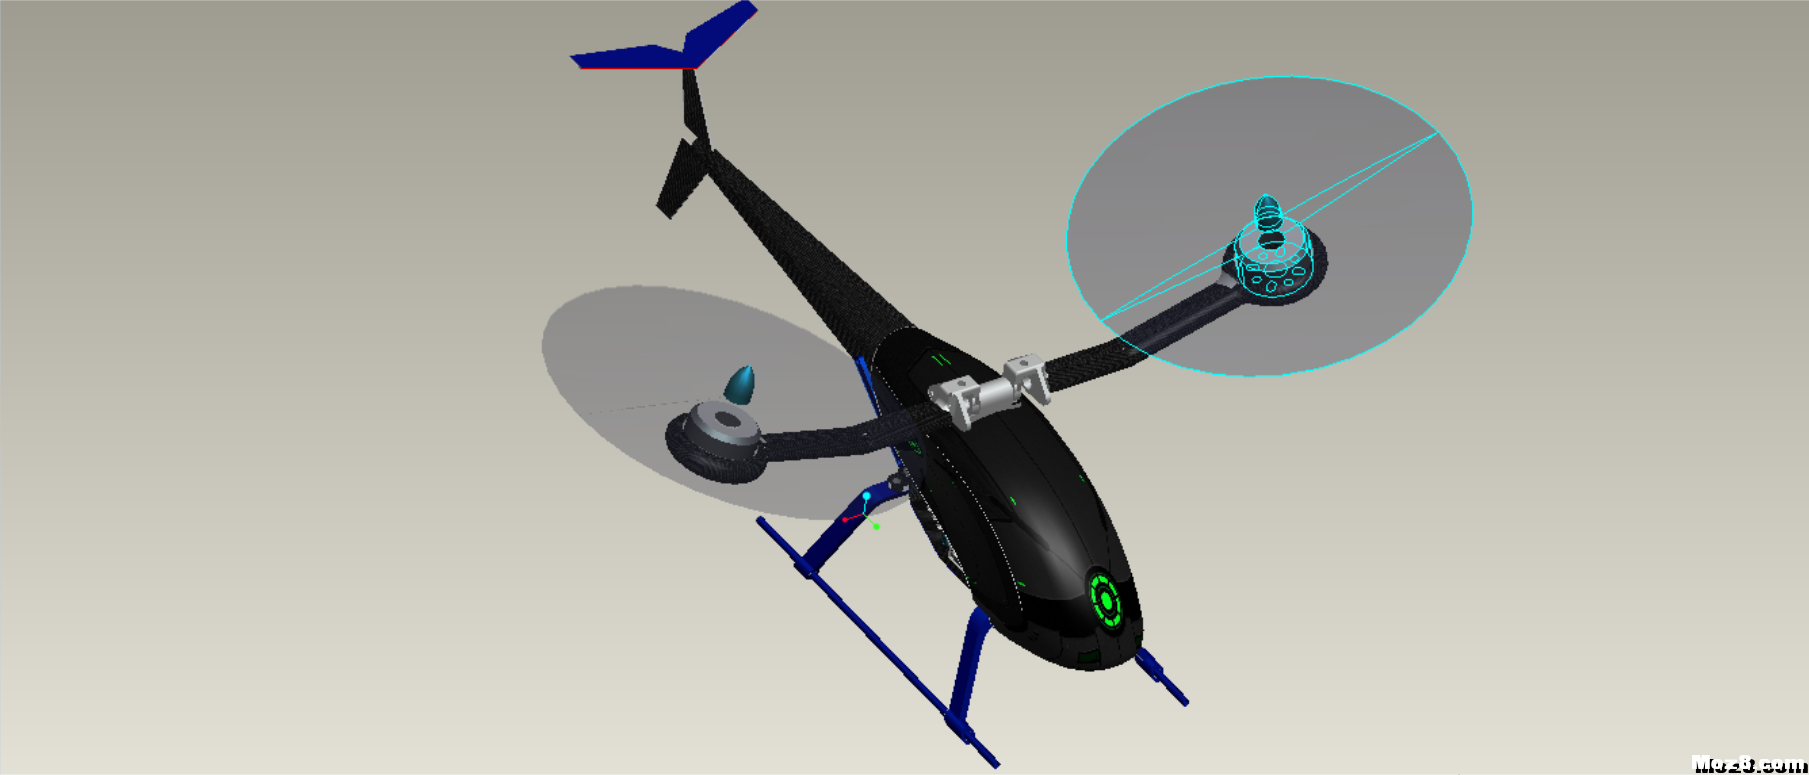 蜂鸟250两轴飞行器（文末附3D打印图纸） 固定翼,直升机,电机,3D打印,图纸 作者:Frontier 6164 